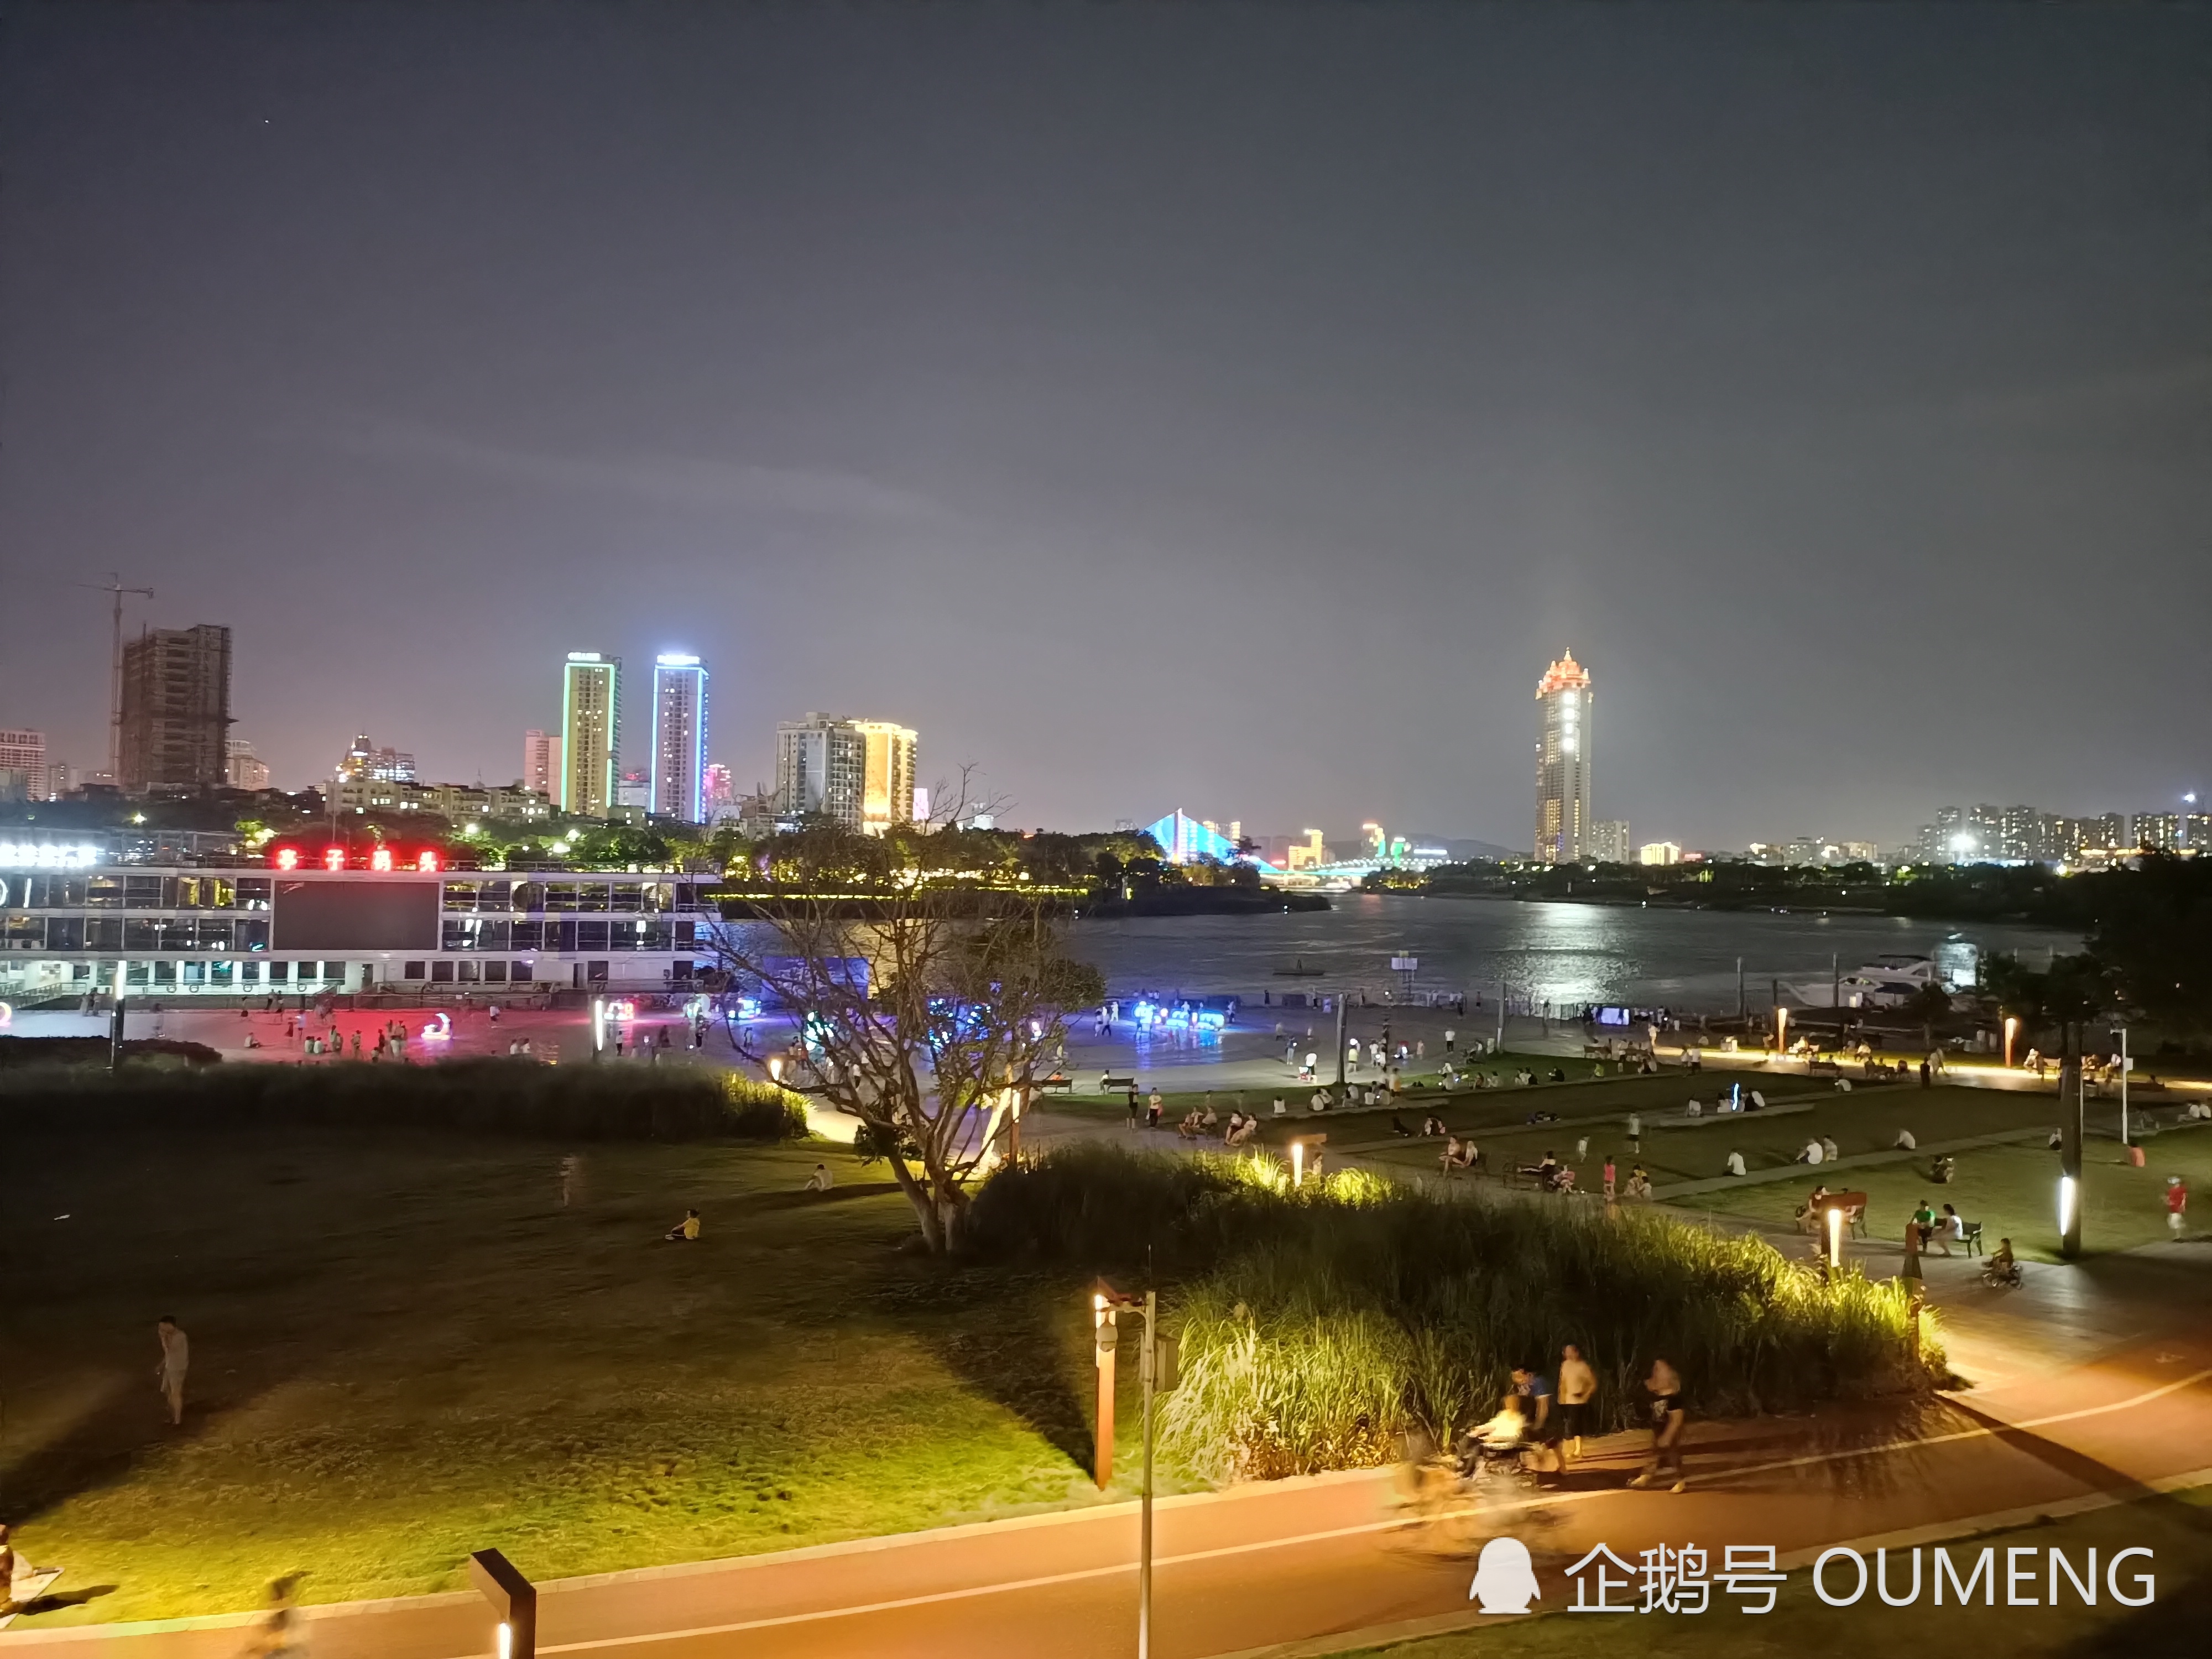 夜晚,南宁亭子滨江公园五彩斑斓,是人们休闲娱乐的好地方